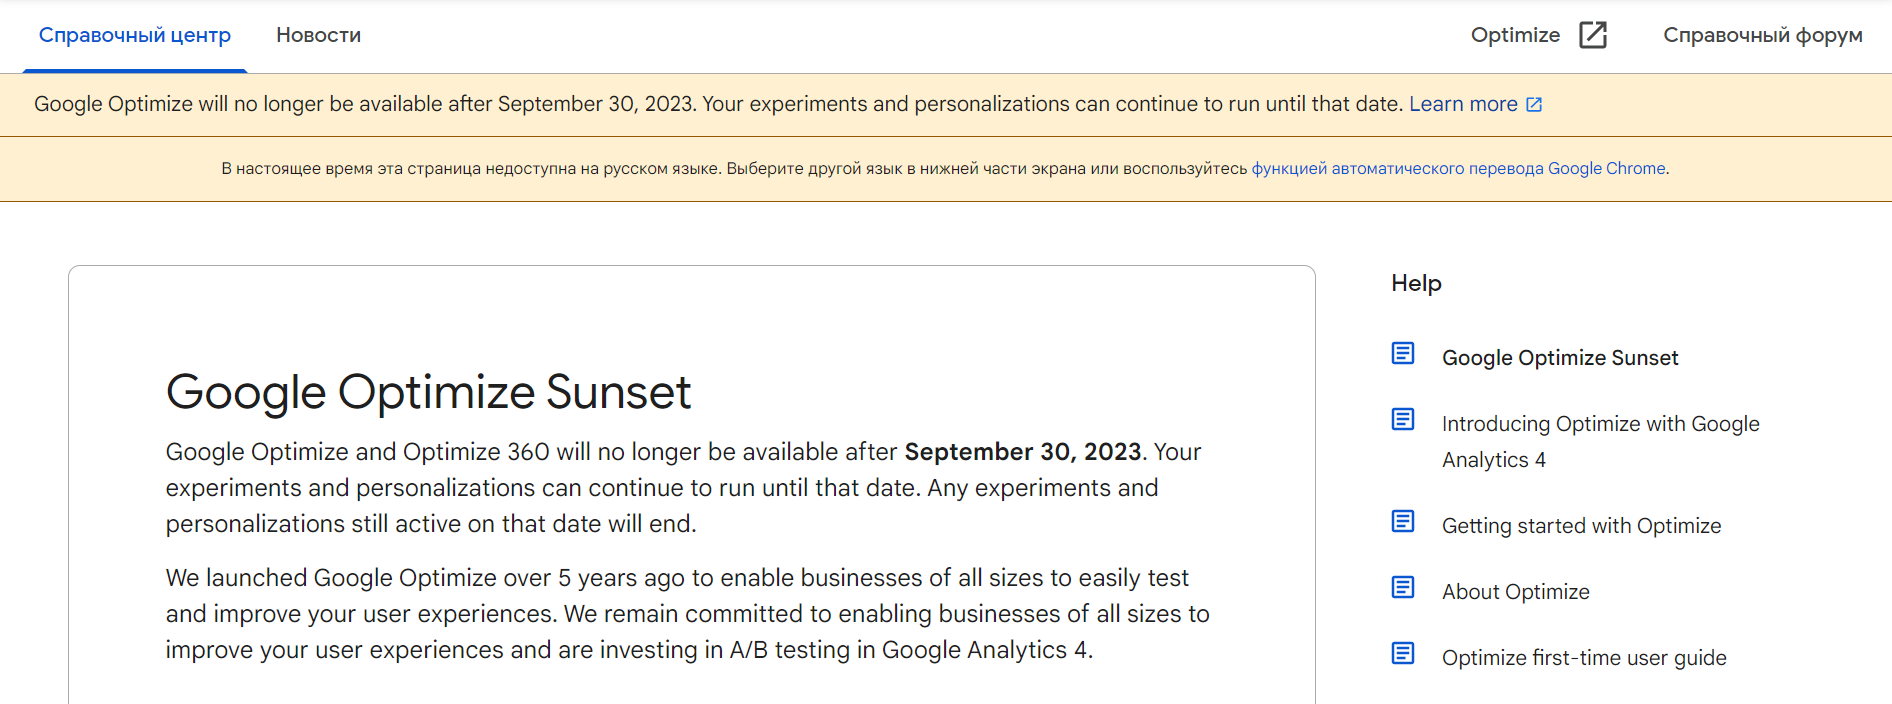  30 сентября перестанет работать Google Optimize